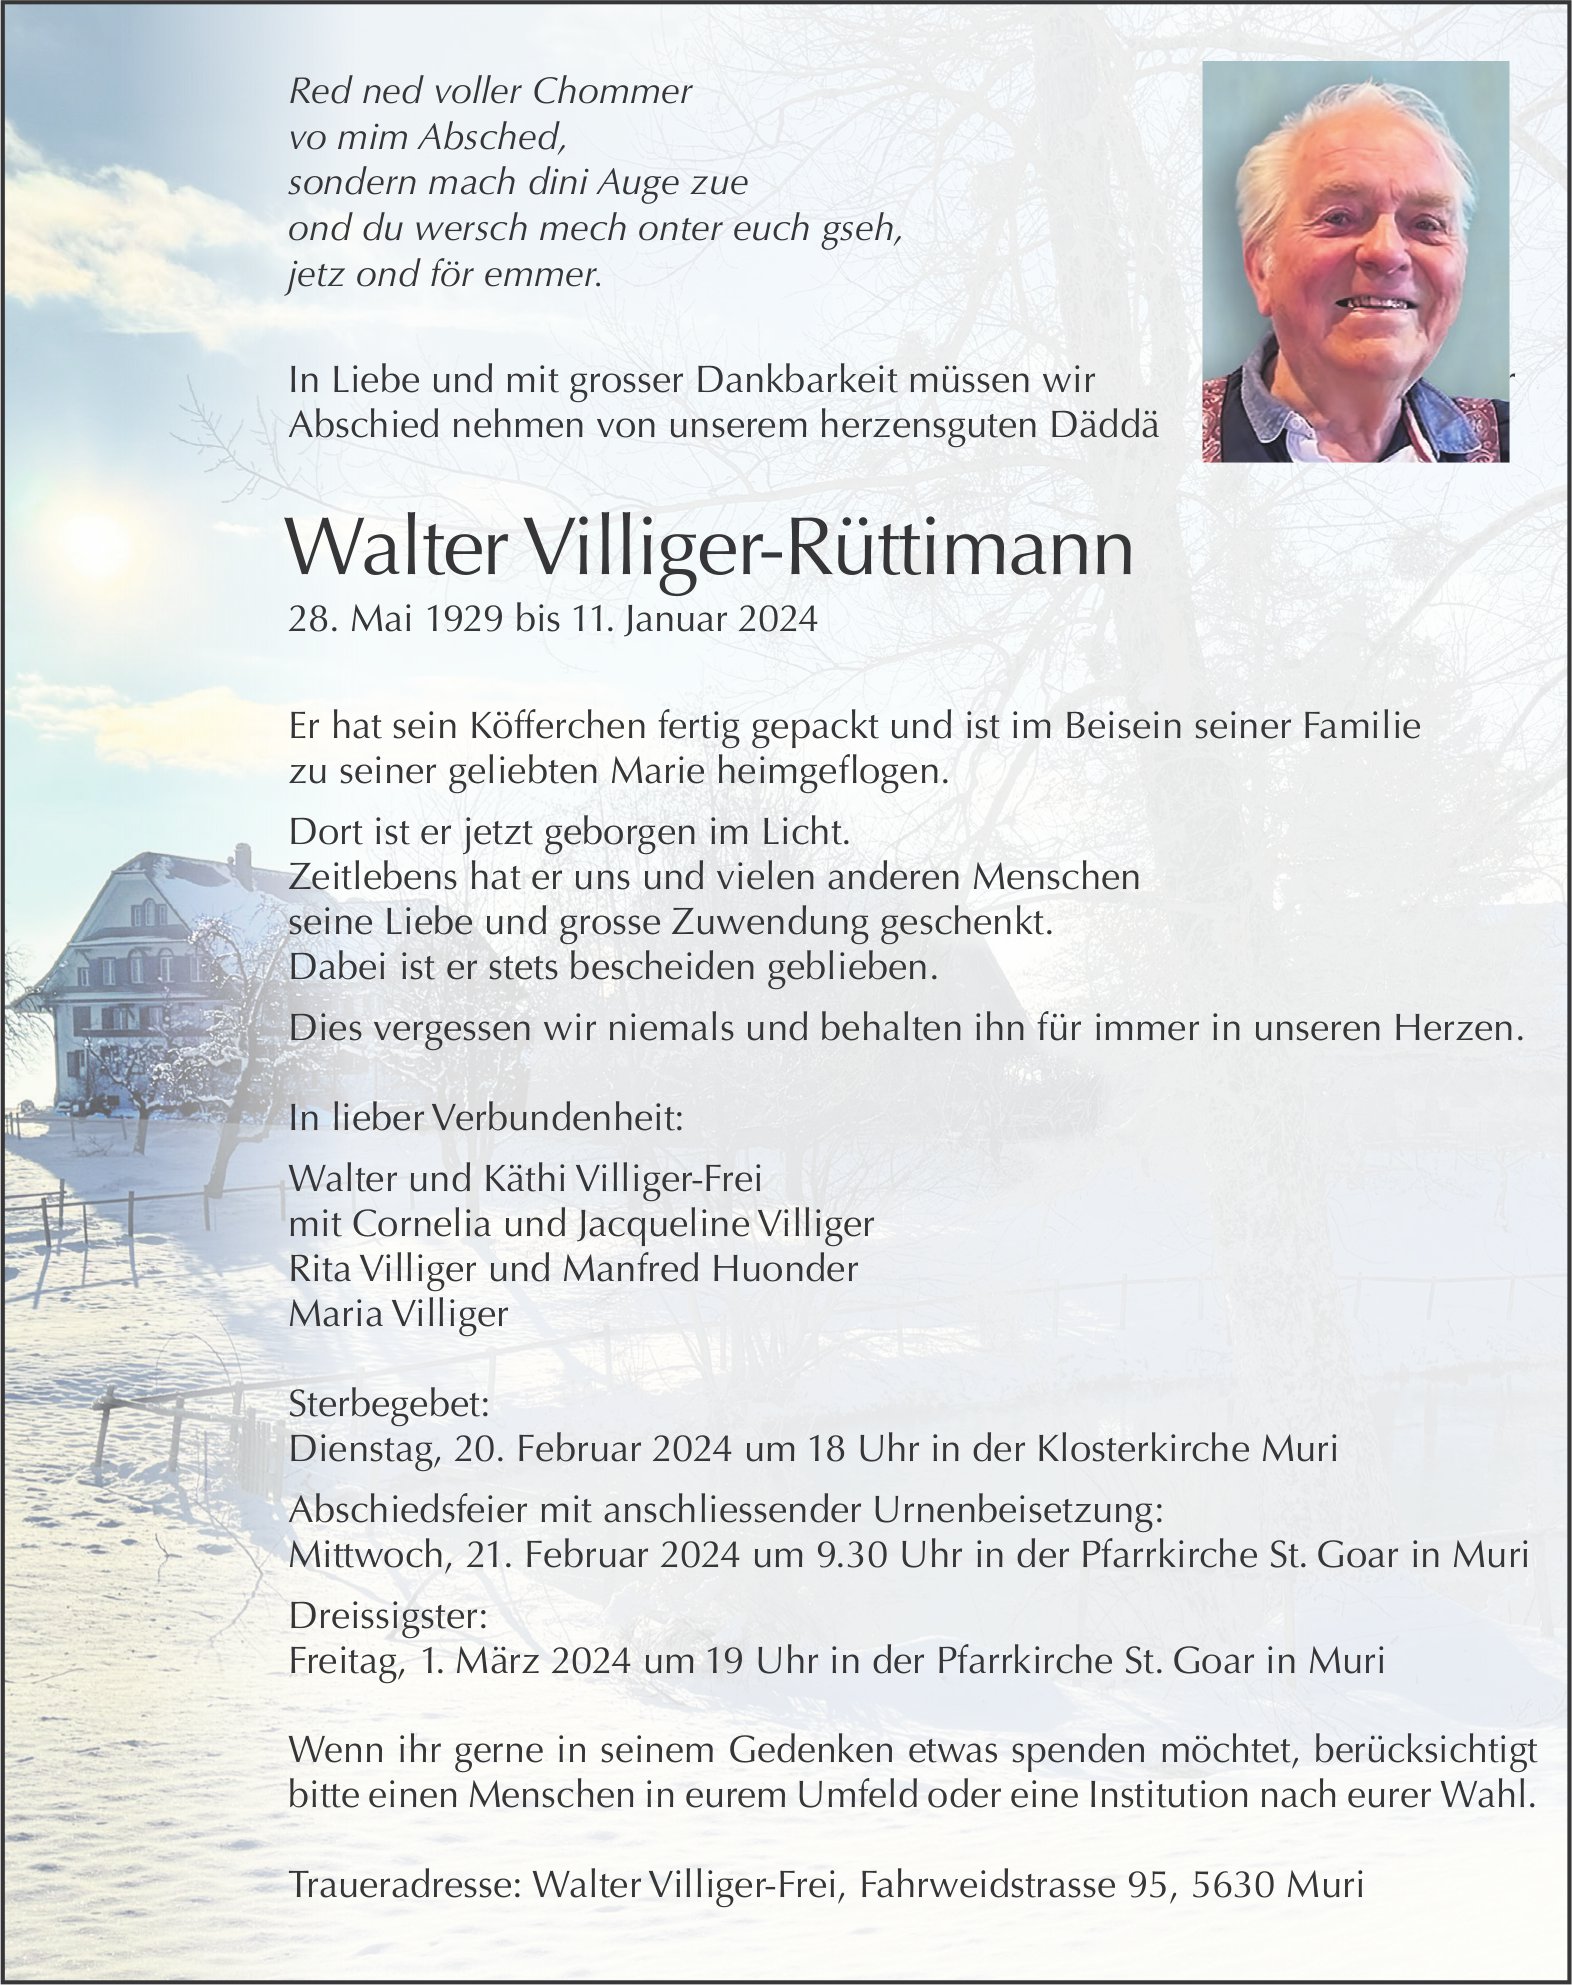 Villiger-Rüttimann Walter, Januar 2024 / TA